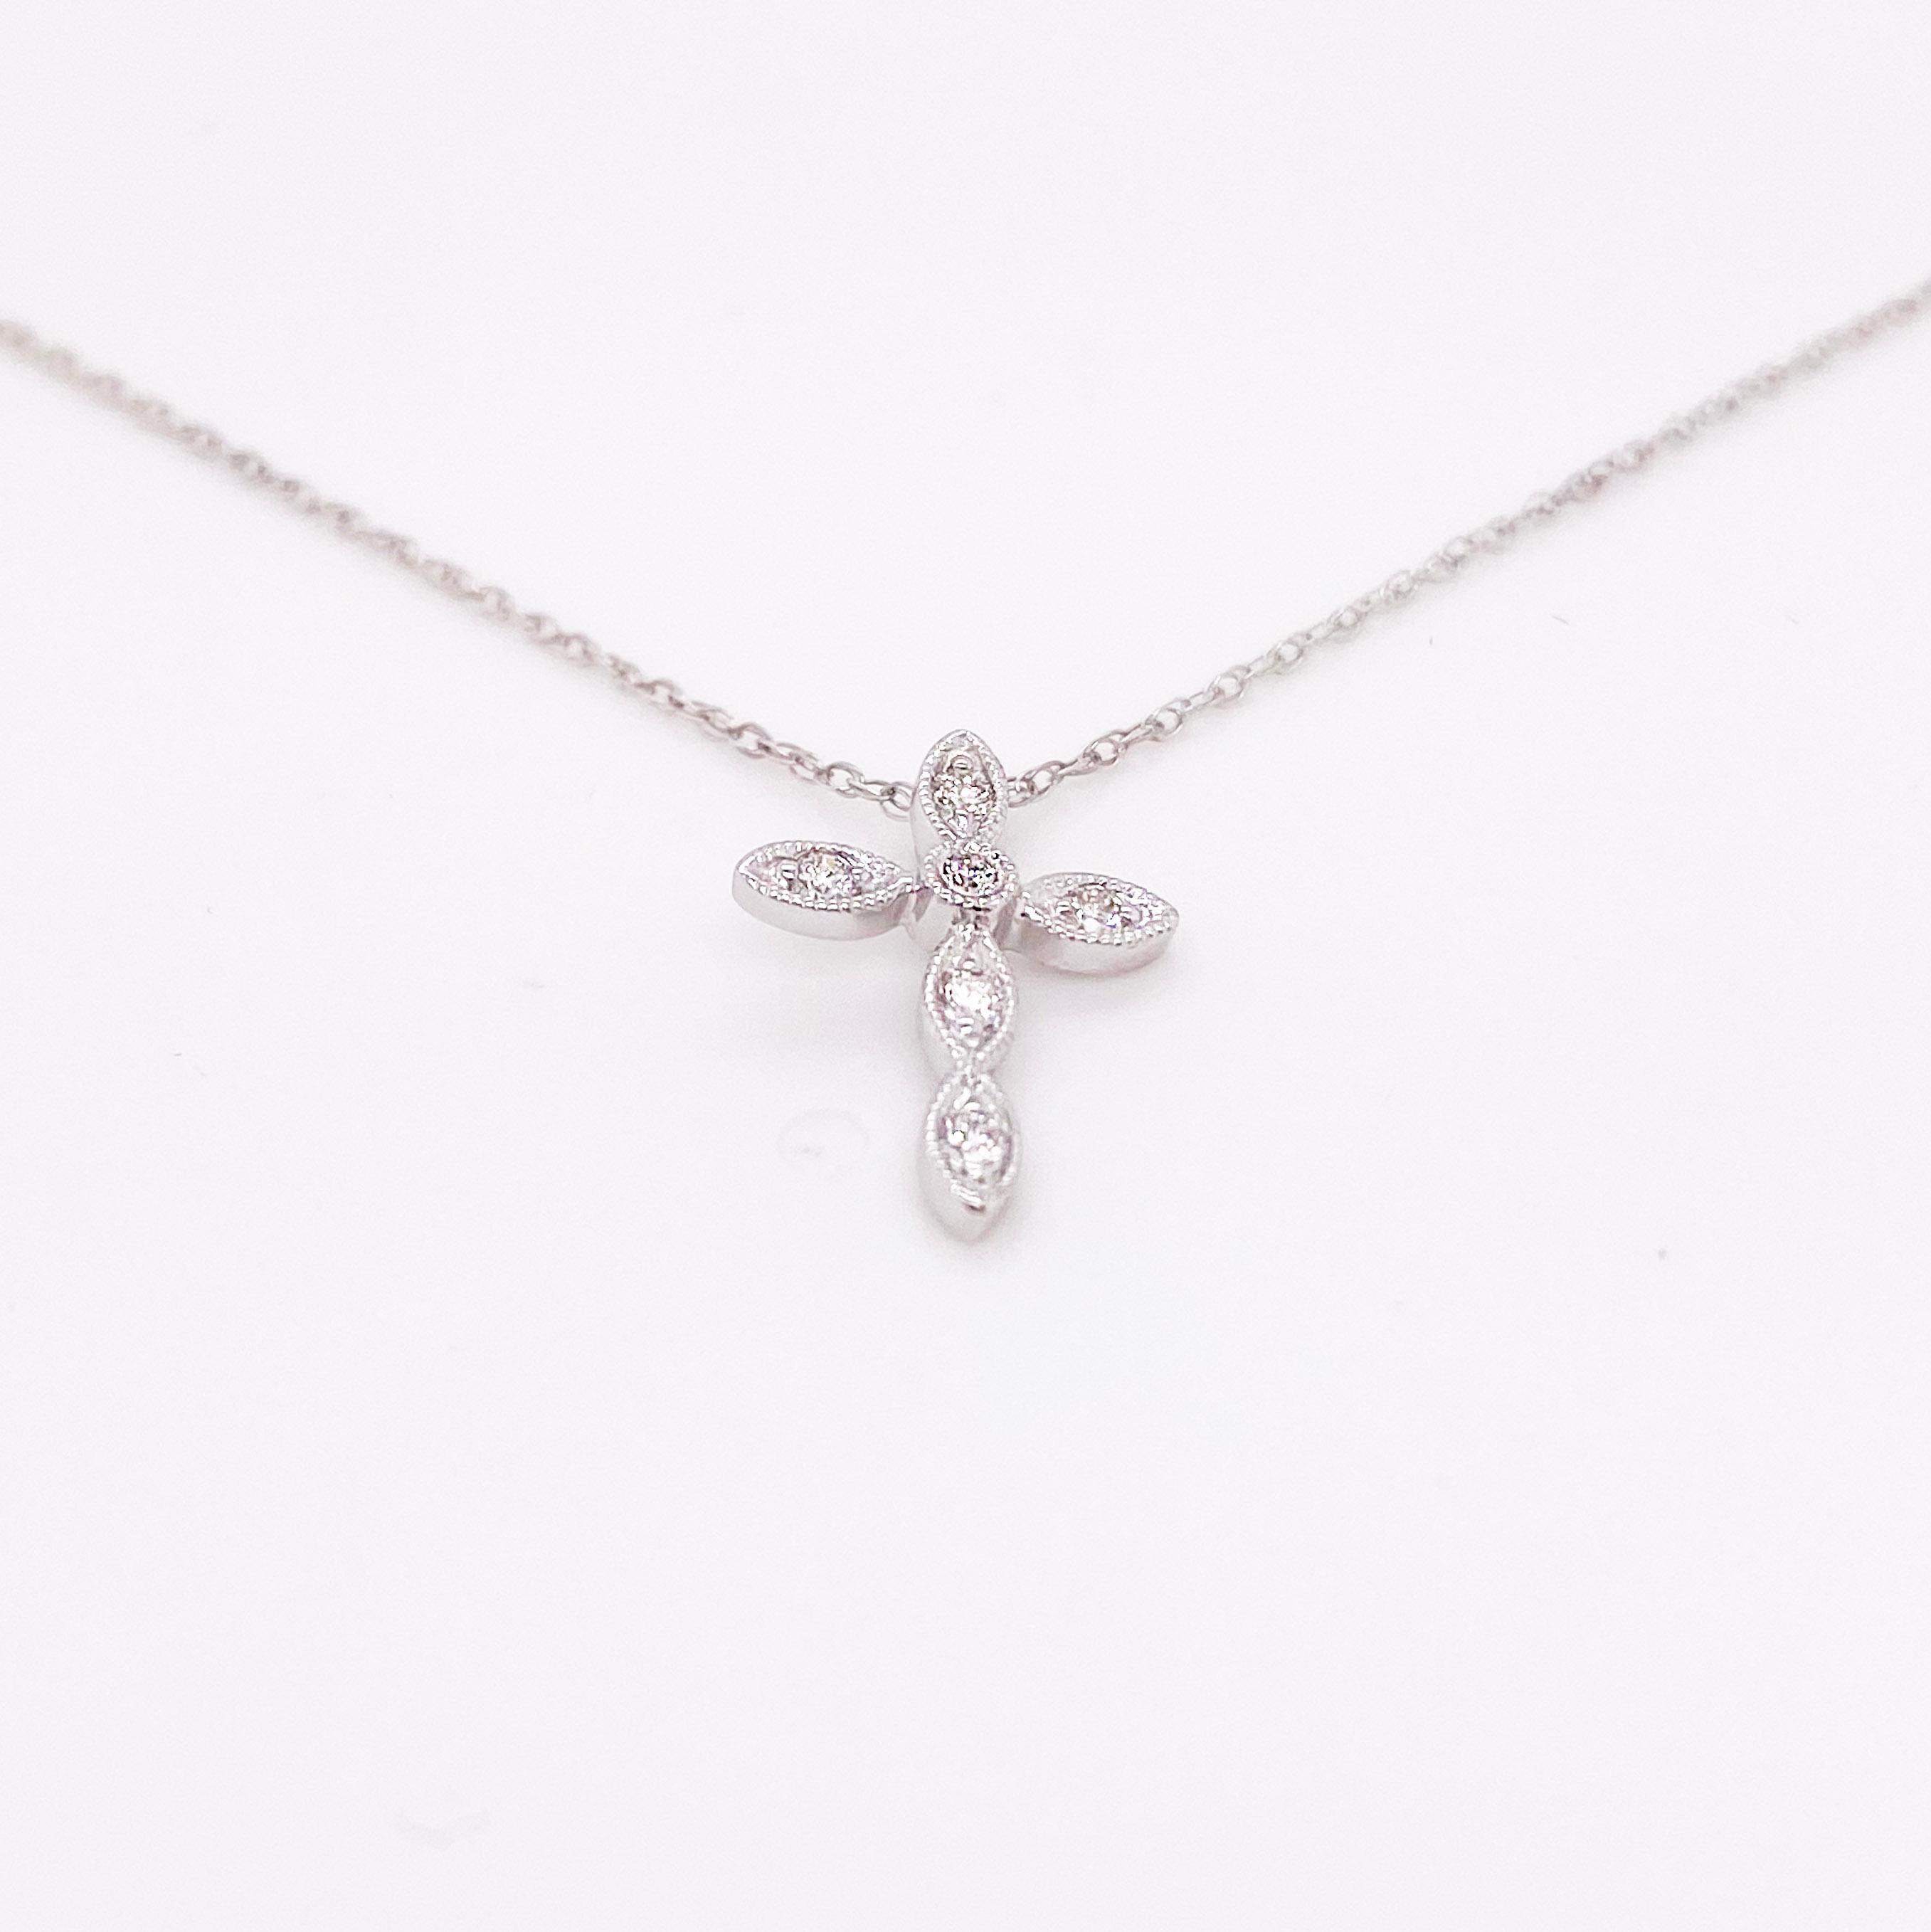 Cette délicate croix en diamant a la taille idéale pour une pièce de joaillerie fine de tous les jours. Ce serait un excellent cadeau pour un anniversaire, une naissance, Noël ou une première communion. La croix est d'une taille idéale pour être